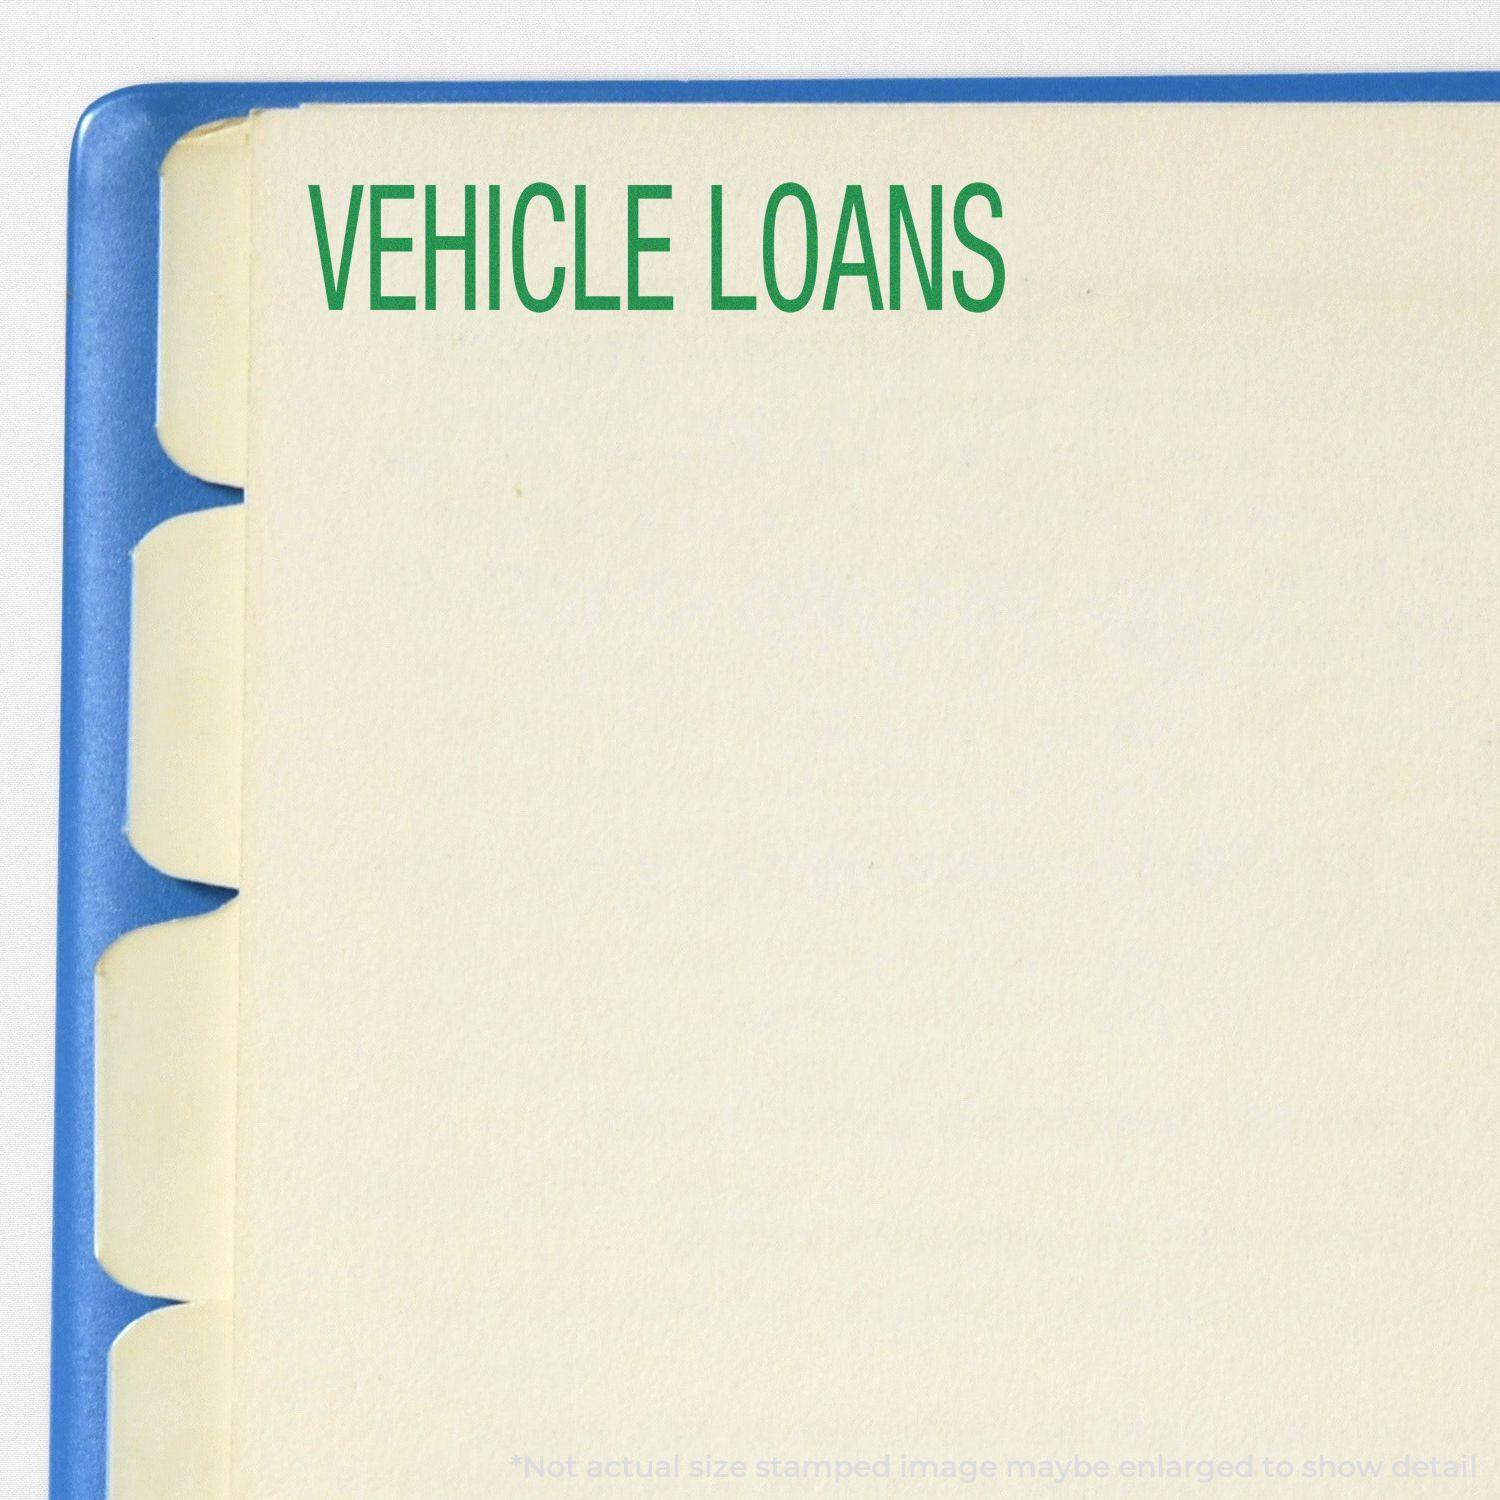 In Use Slim Pre Inked Vehicle Loans Stamp Image